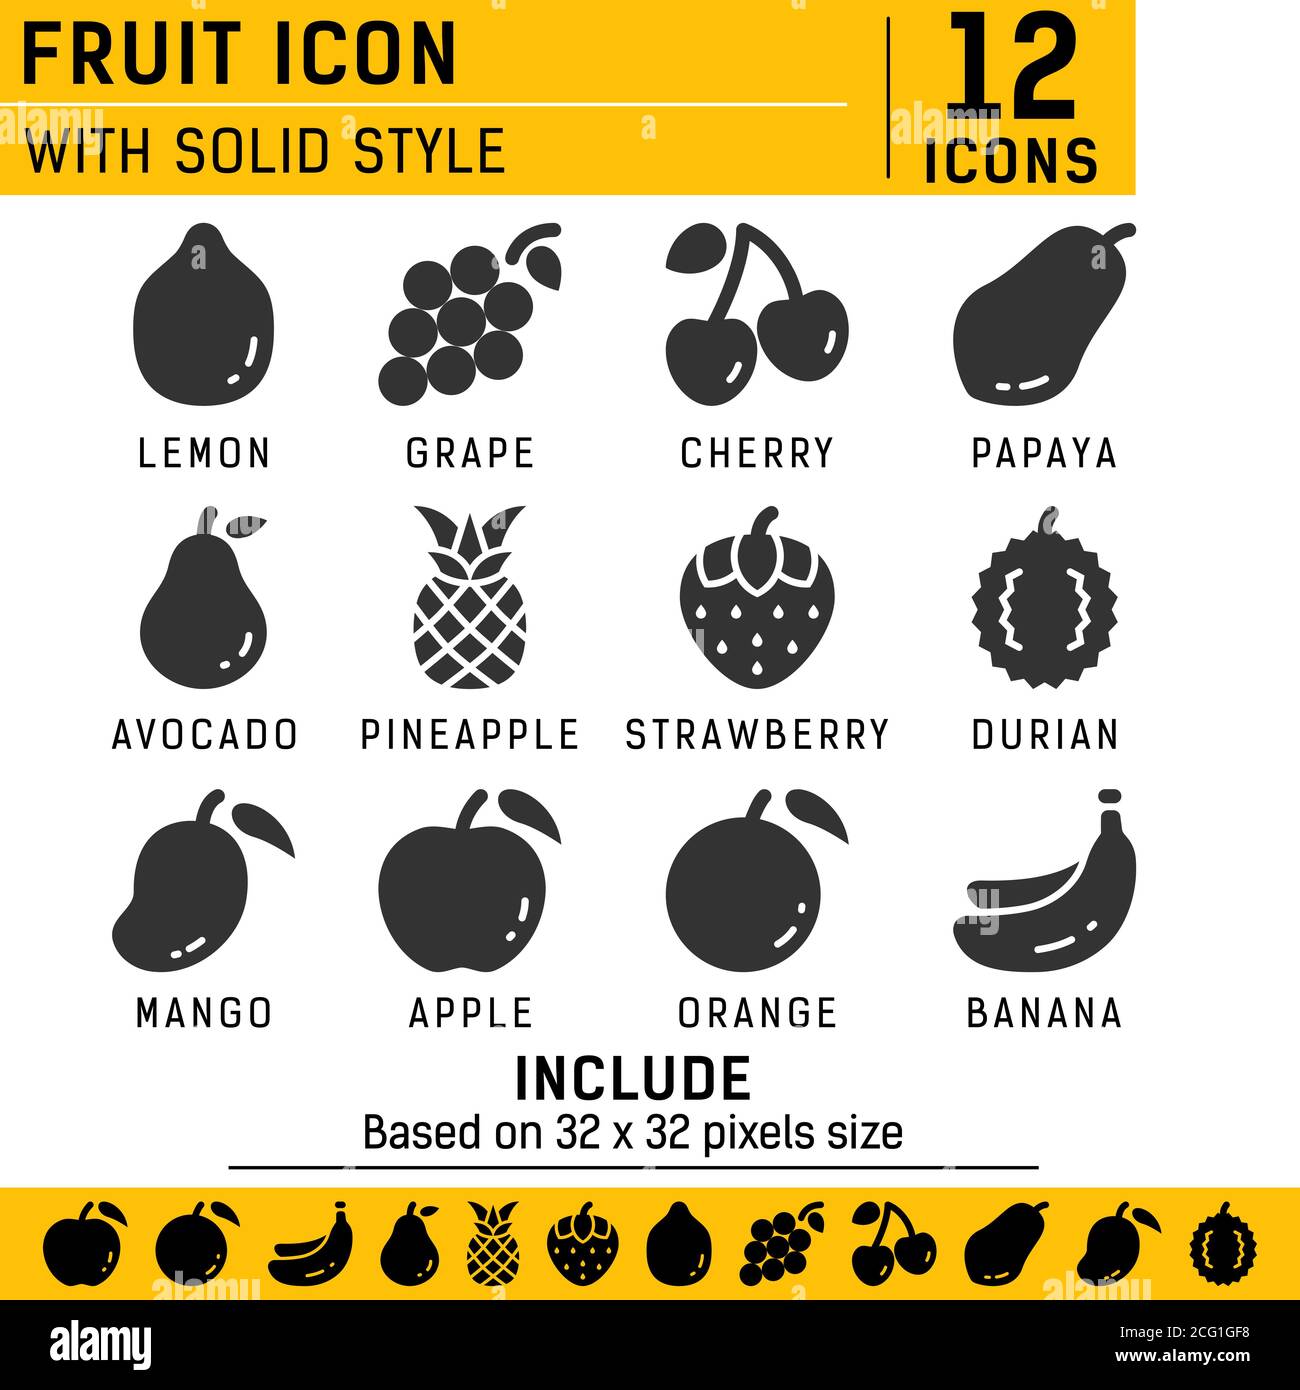 Obst-Icon-Set mit einfarbigen Stil in isolierten weißen Hintergrund. Obst Vektor Icon Set, Kirsche, Apfel, Erdbeere, Banane und andere mit soliden Stil Stock Vektor